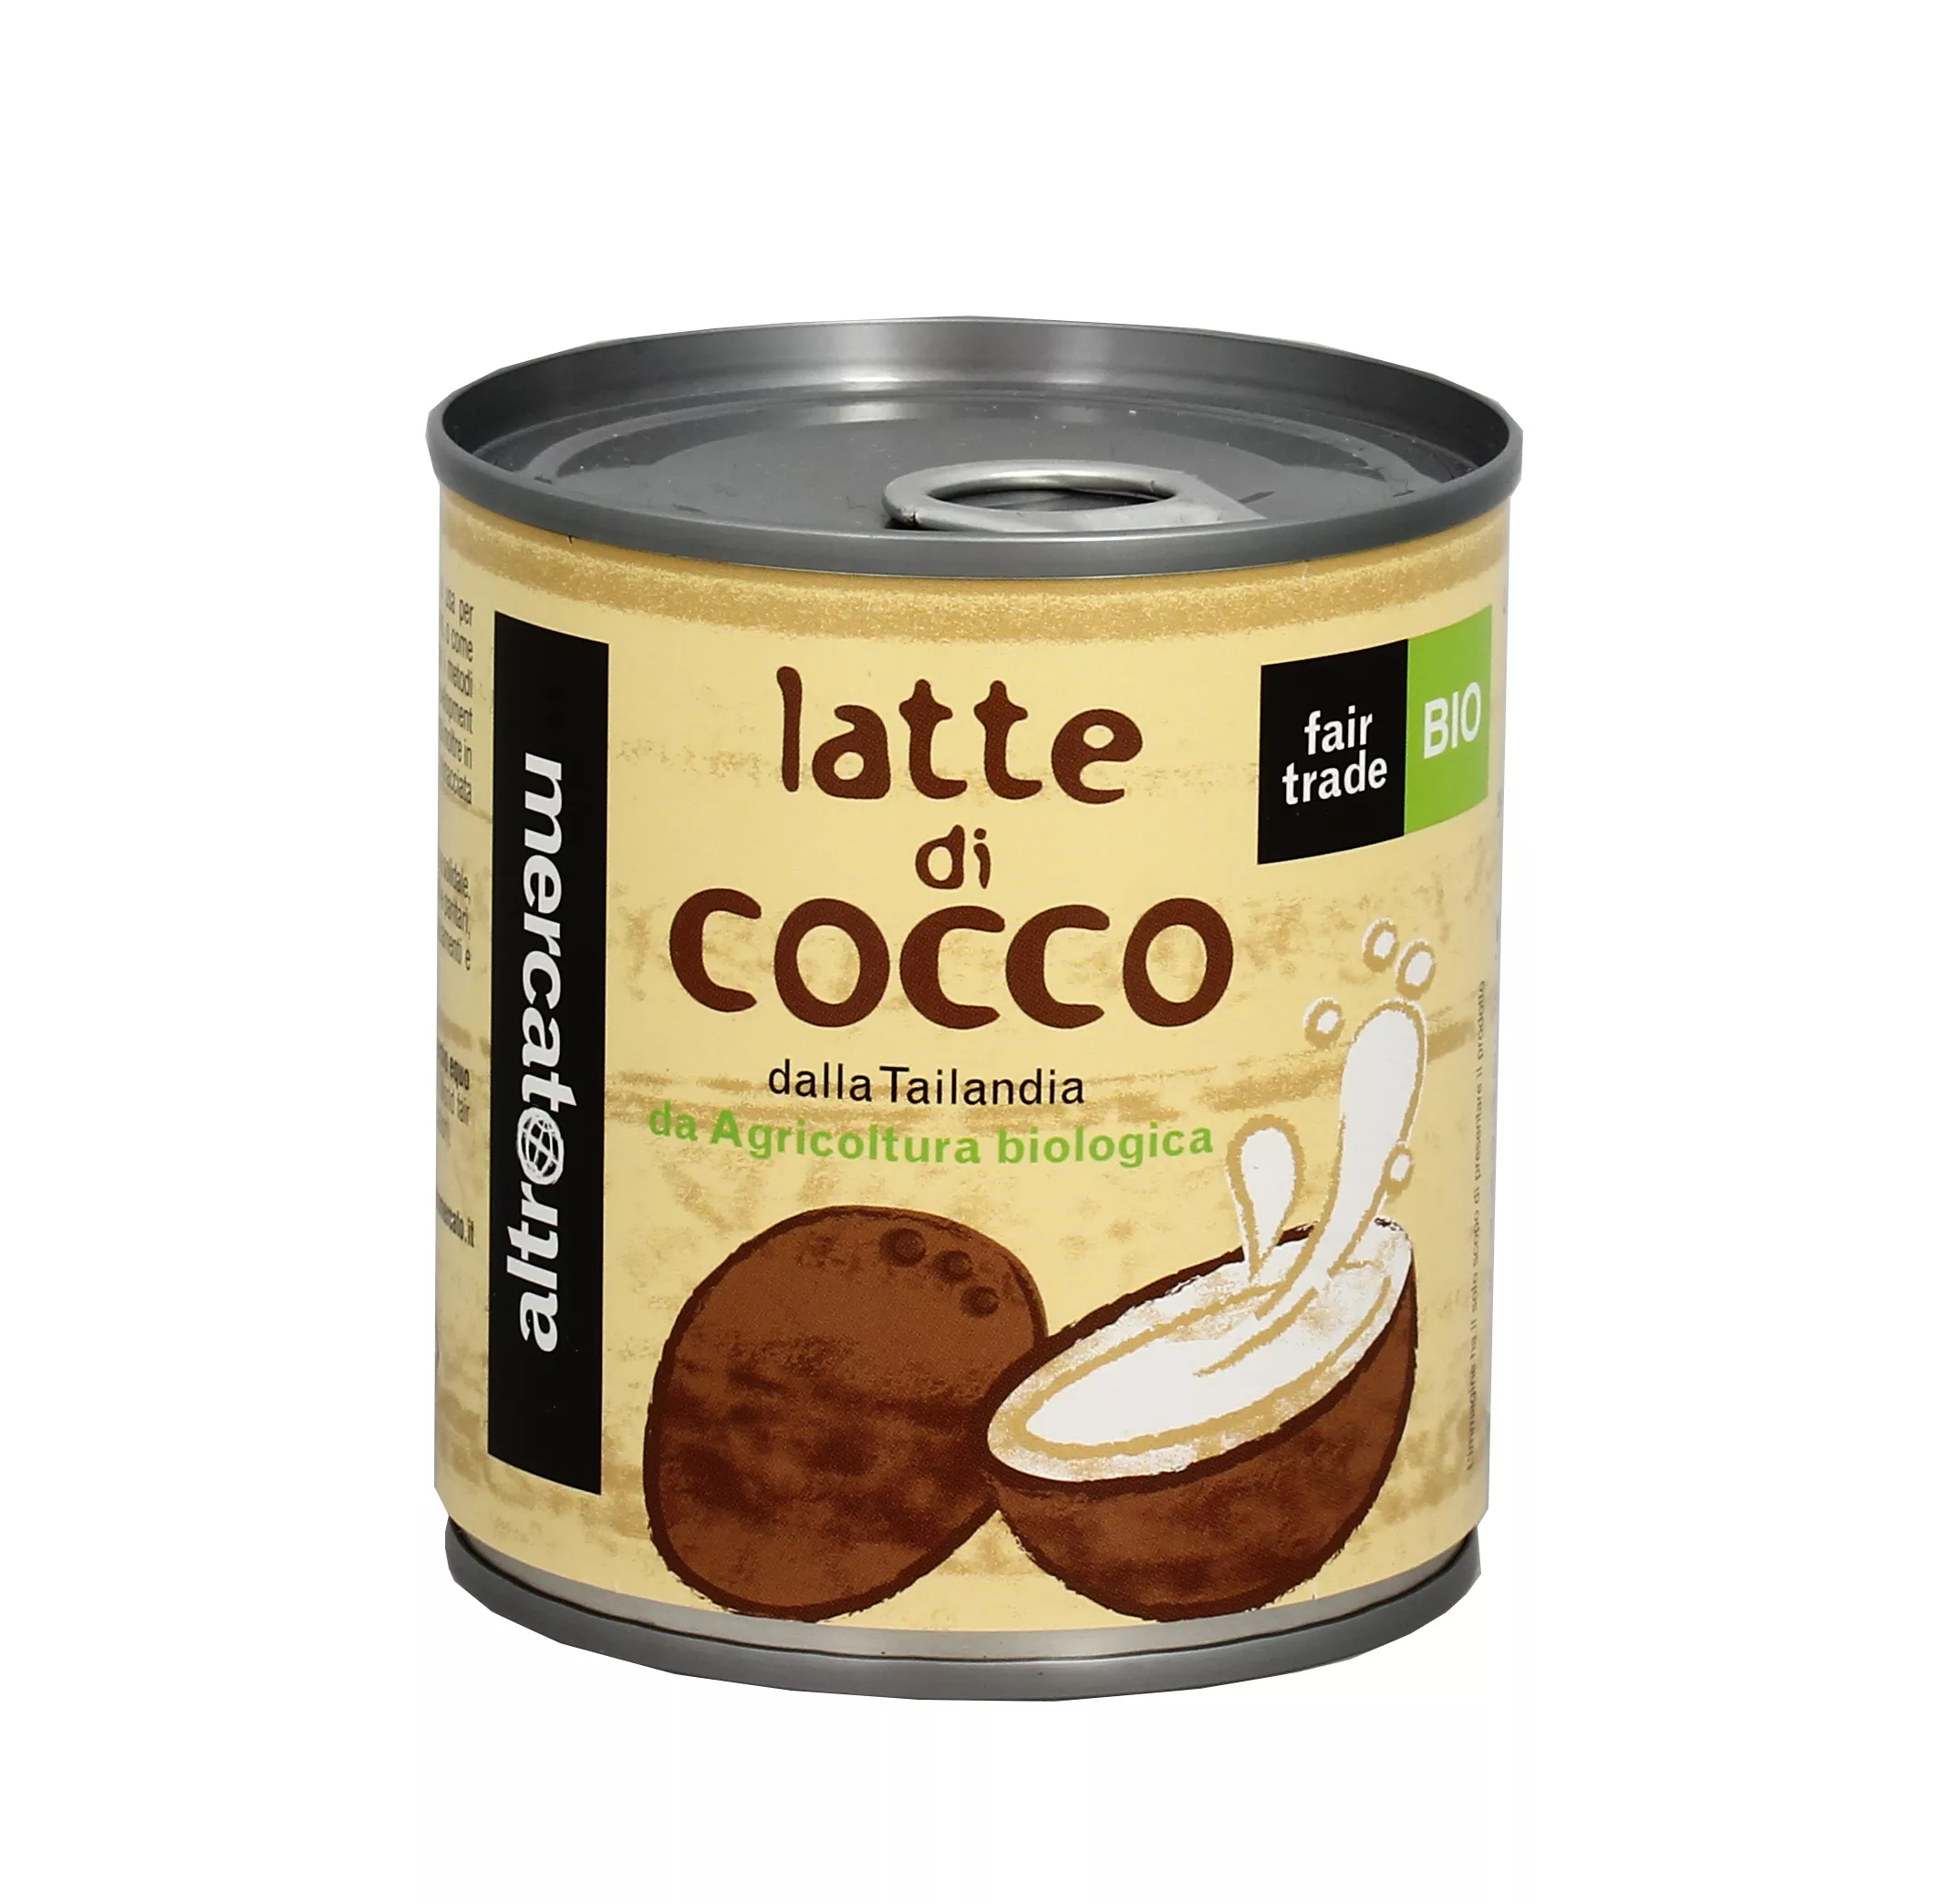 10 ricette con il latte di cocco, una più gustosa dell'altra - LEITV